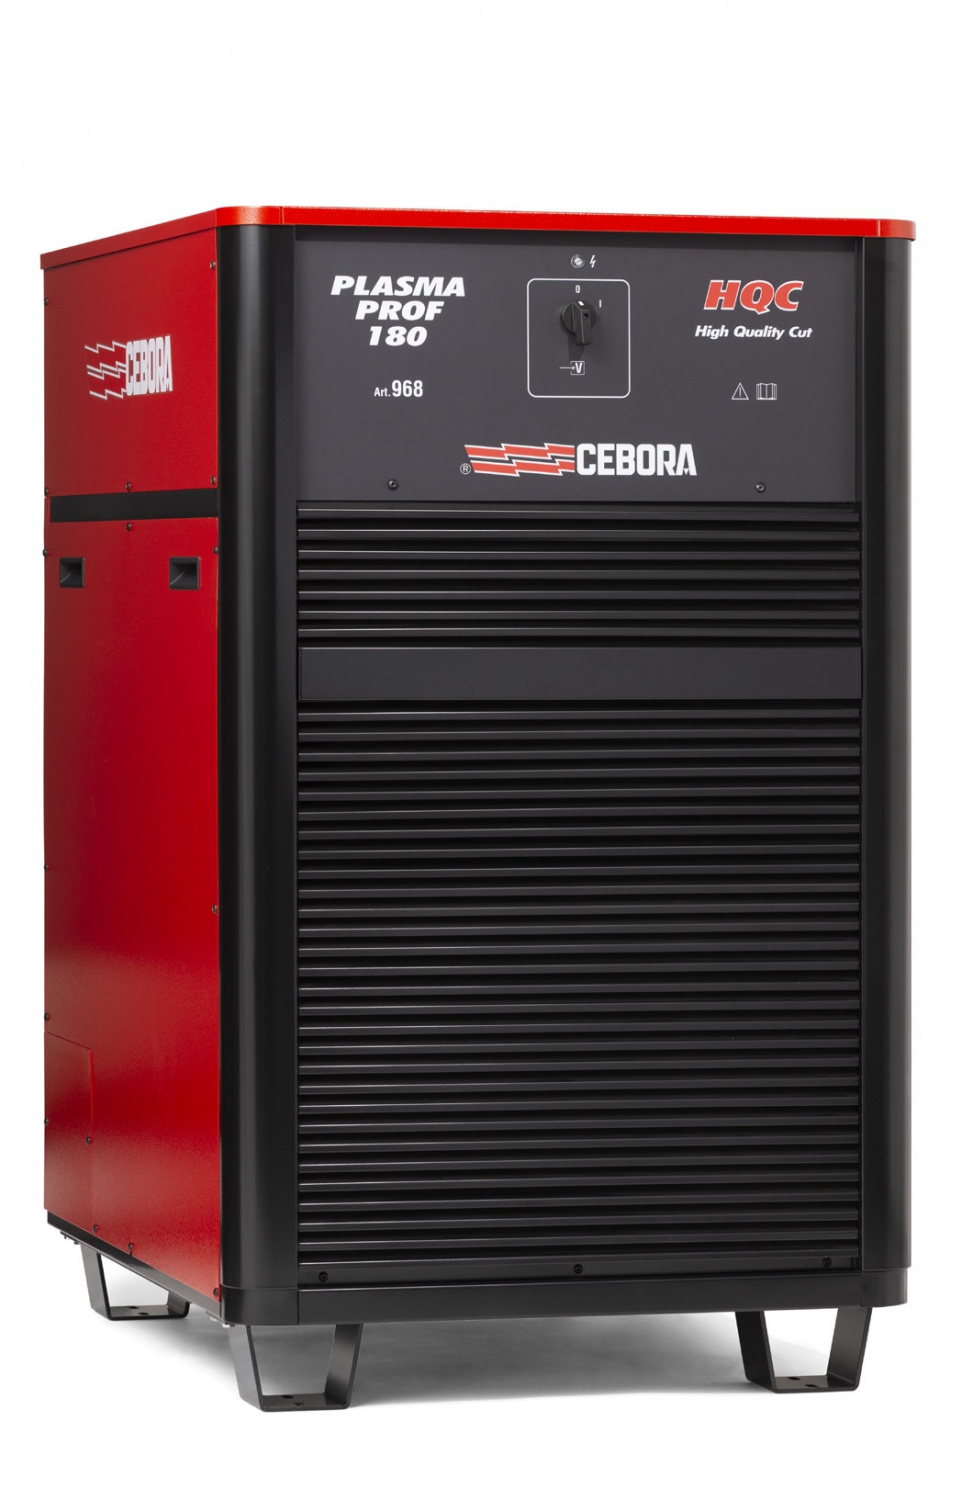 Источник плазменной резки Cebora PLASMA PROF 180 HQC+ полный комплект для ЧПУ с автоматической консолью